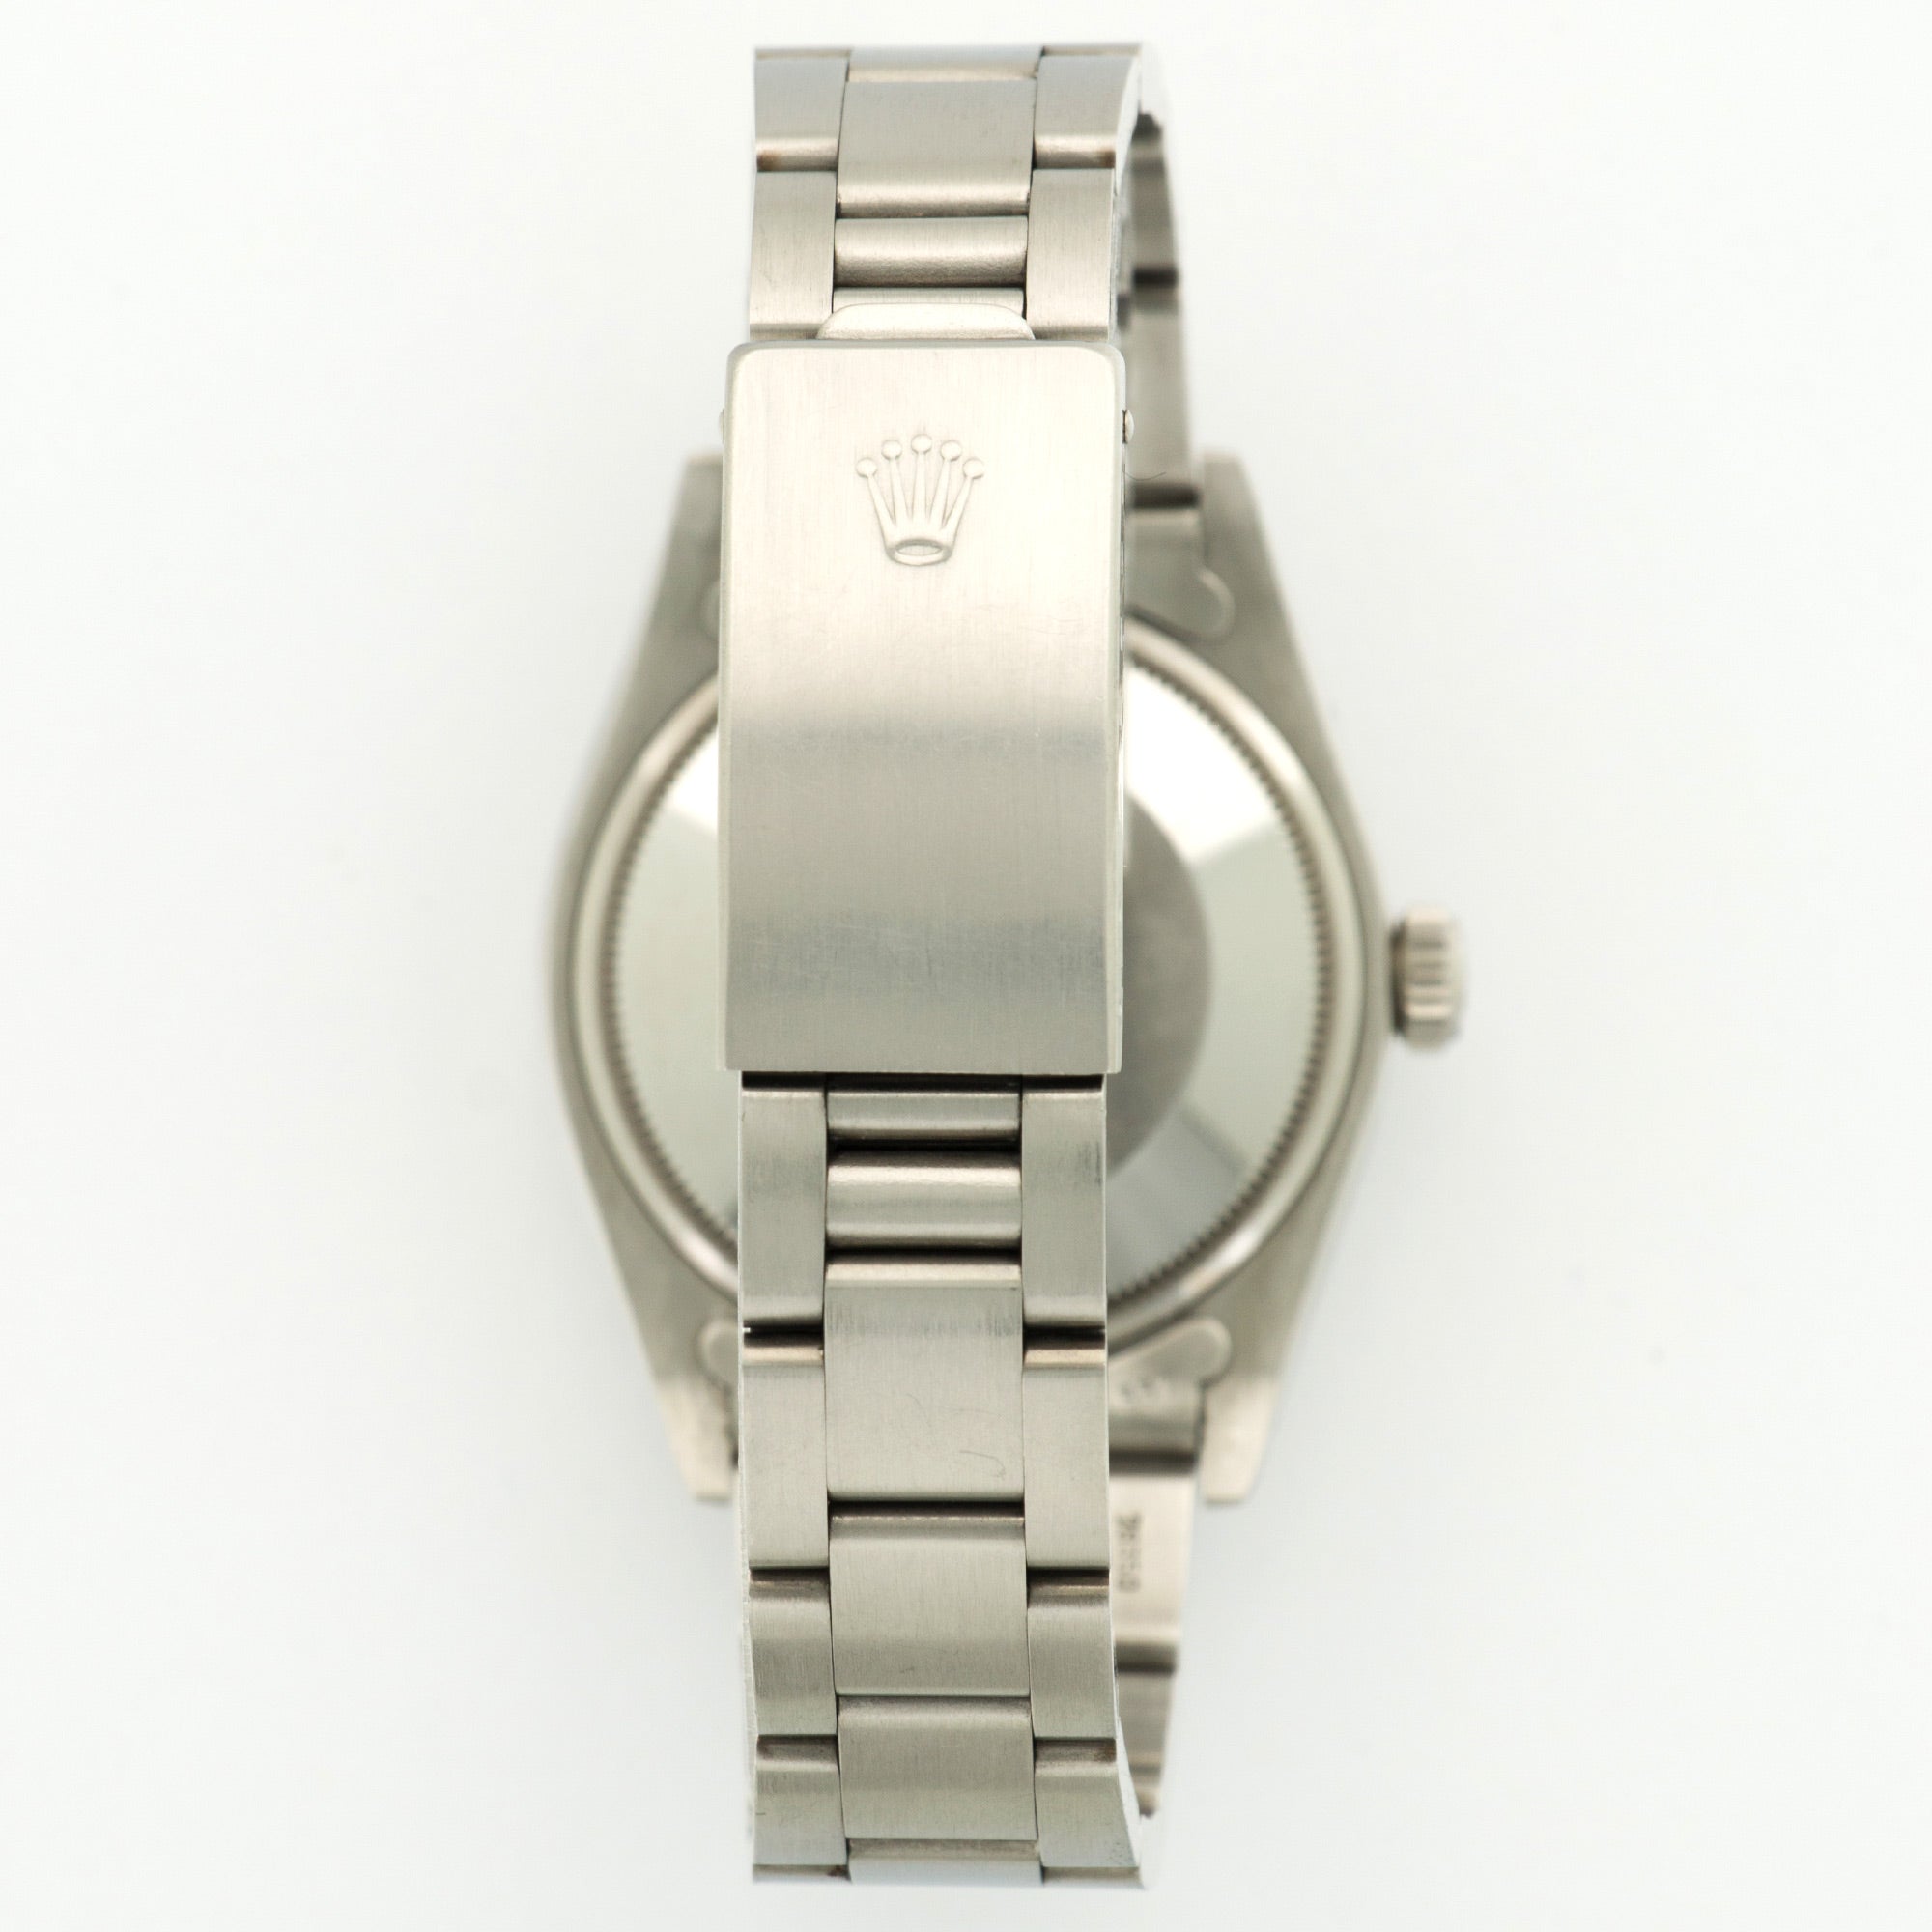 Rolex - Rolex Stainless Steel Date Watch Ref. 1500 - The Keystone Watches